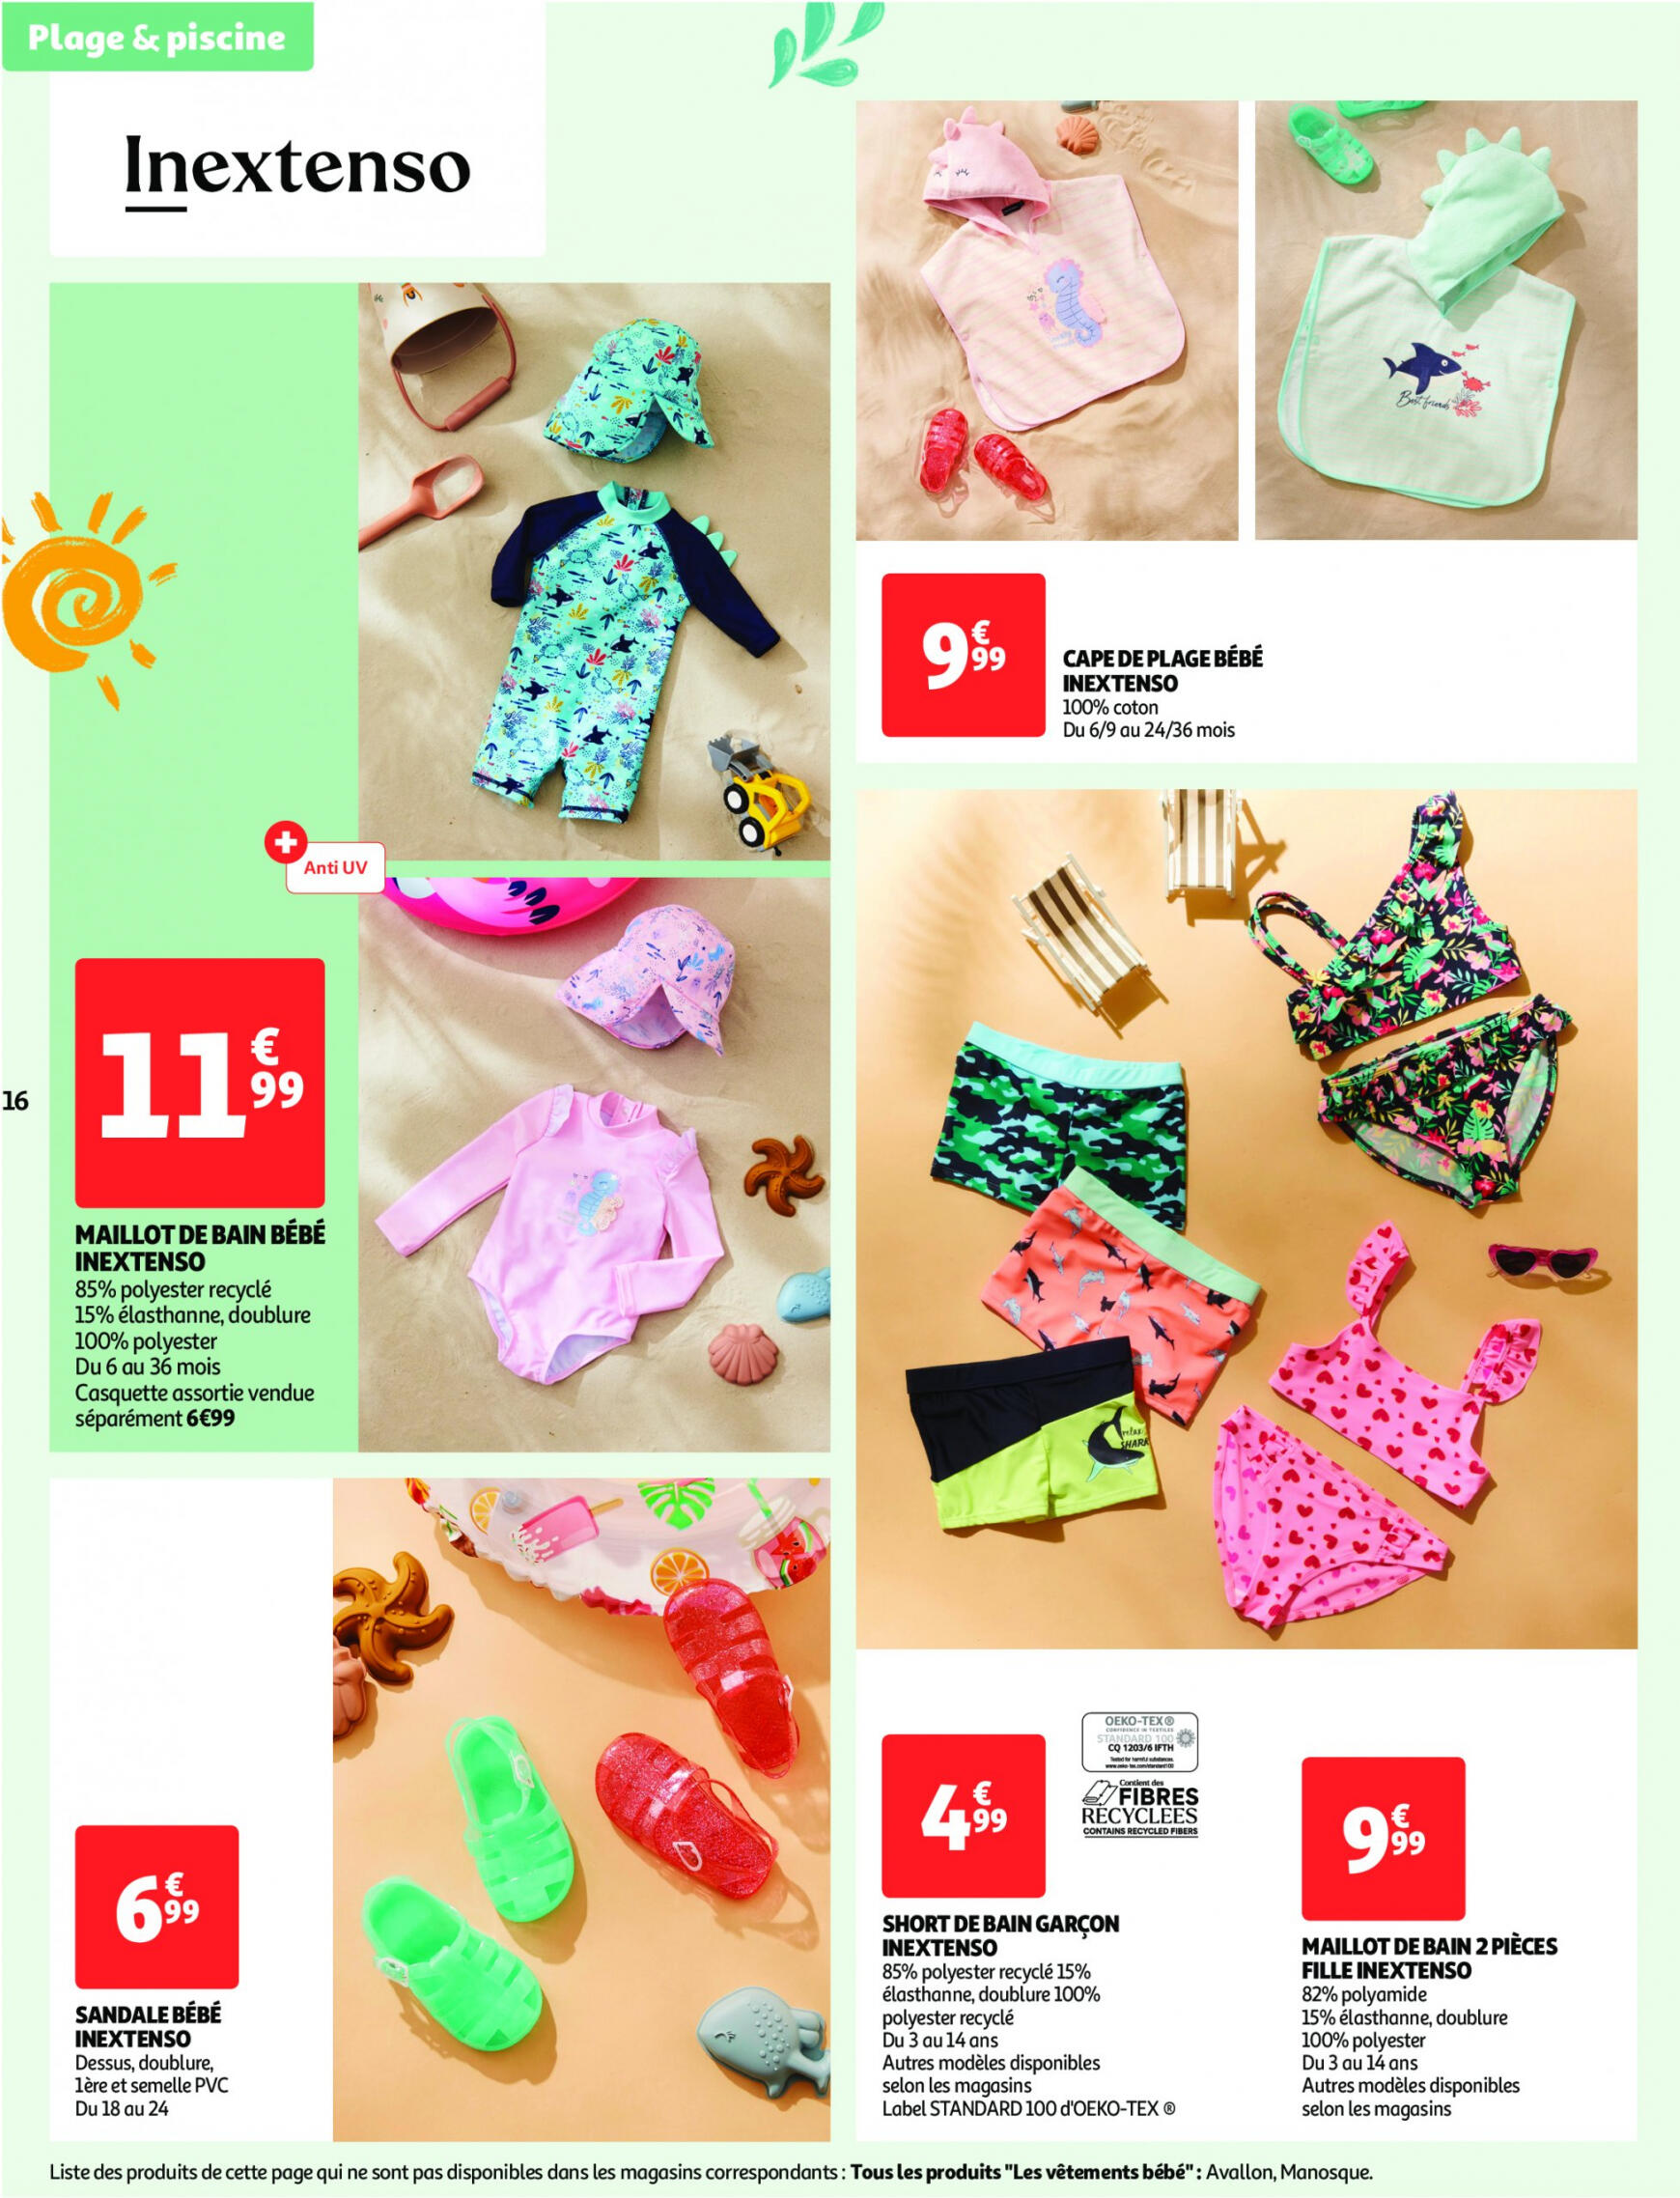 auchan - Auchan - Nos exclusivités Summer pour s'amuser tout l'été folder huidig 14.05. - 15.06. - page: 16